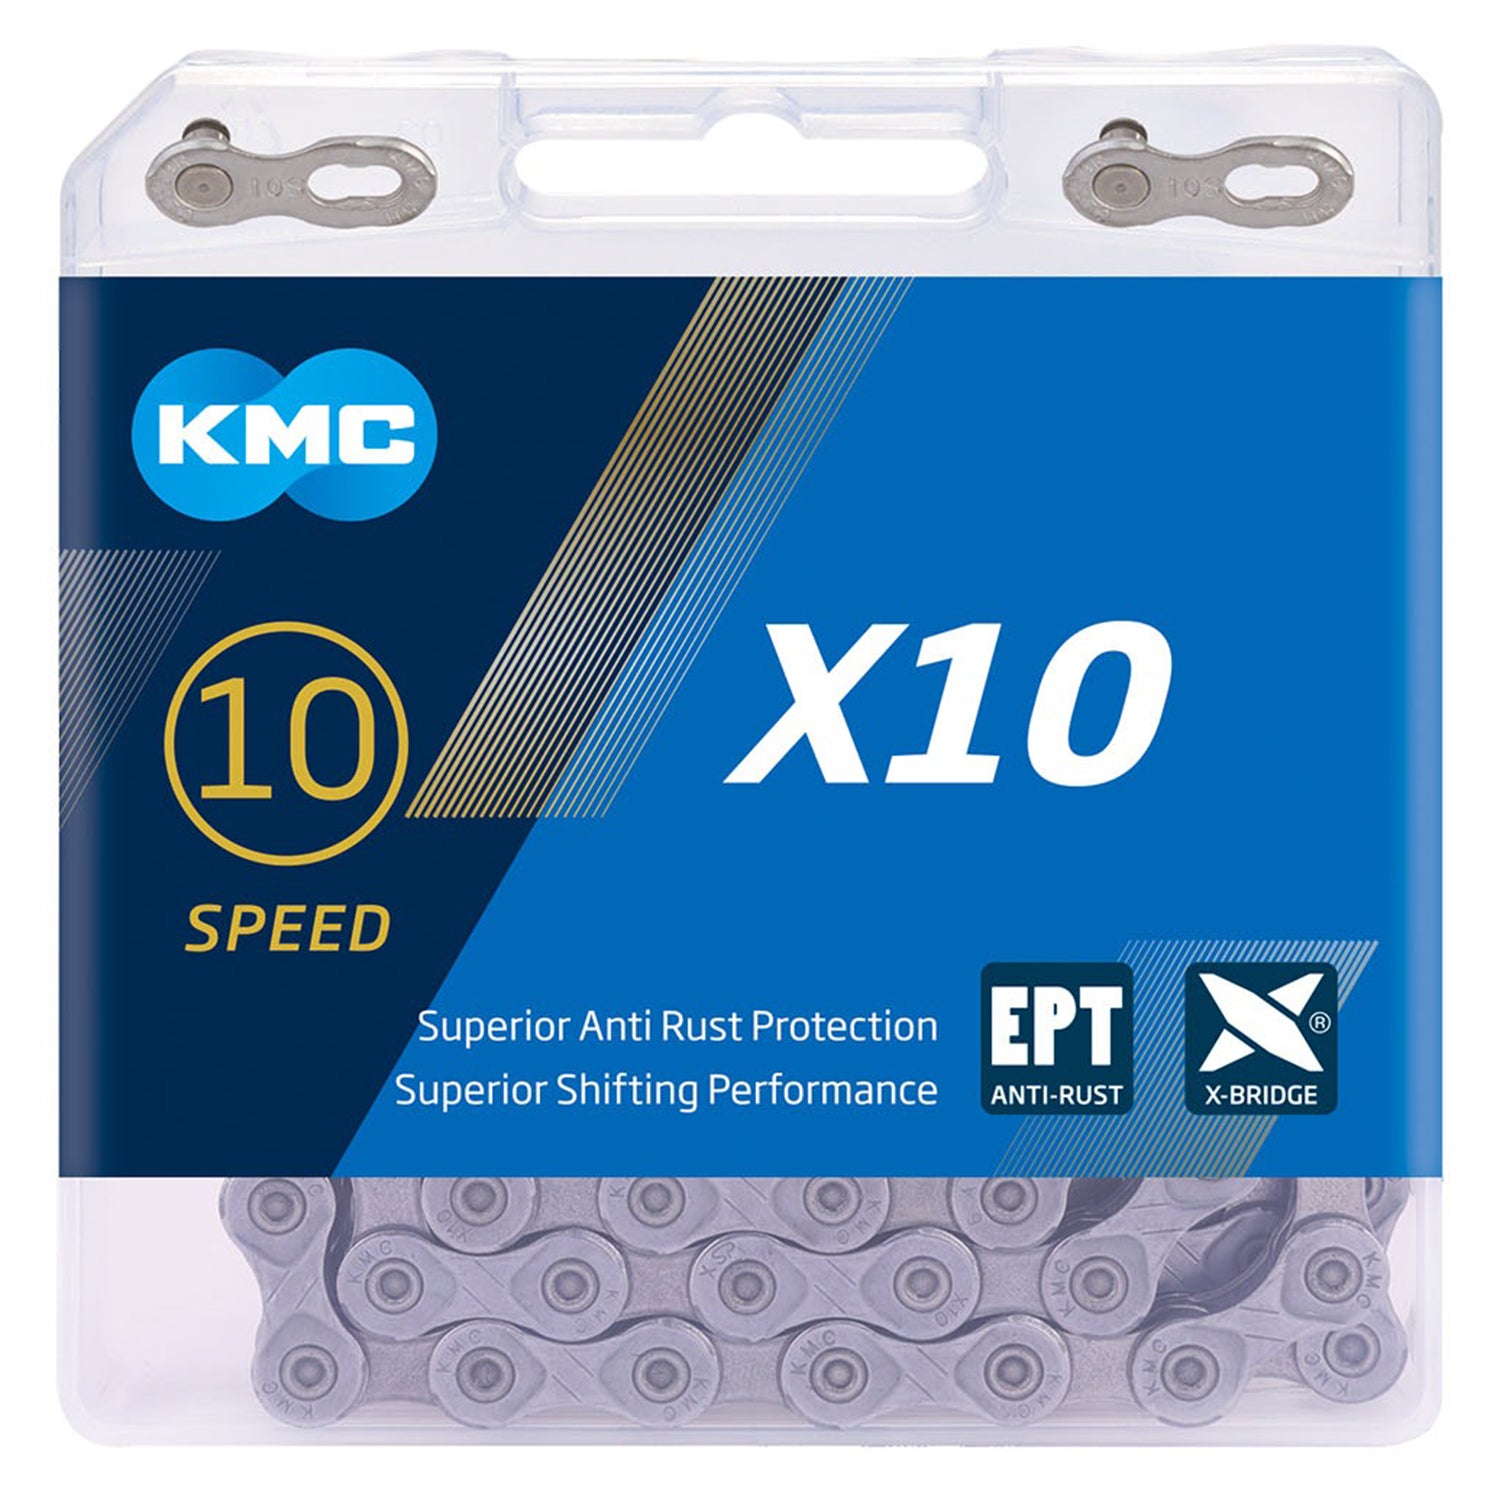 KMC X10 EPT